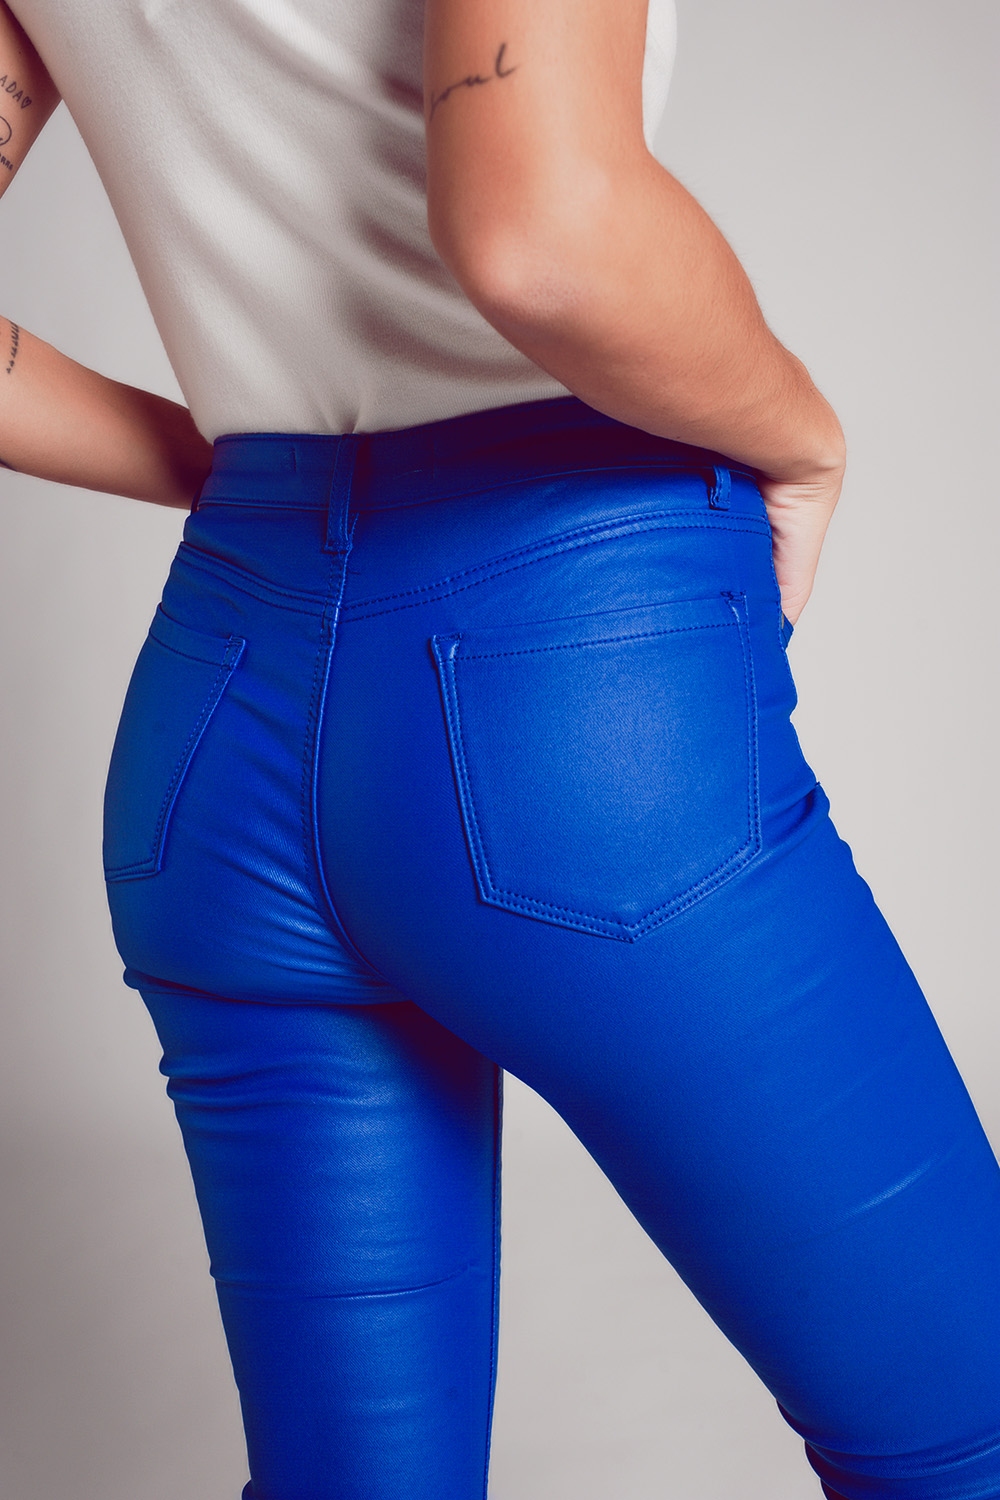 Pantalones elásticos de piel sintética en azul